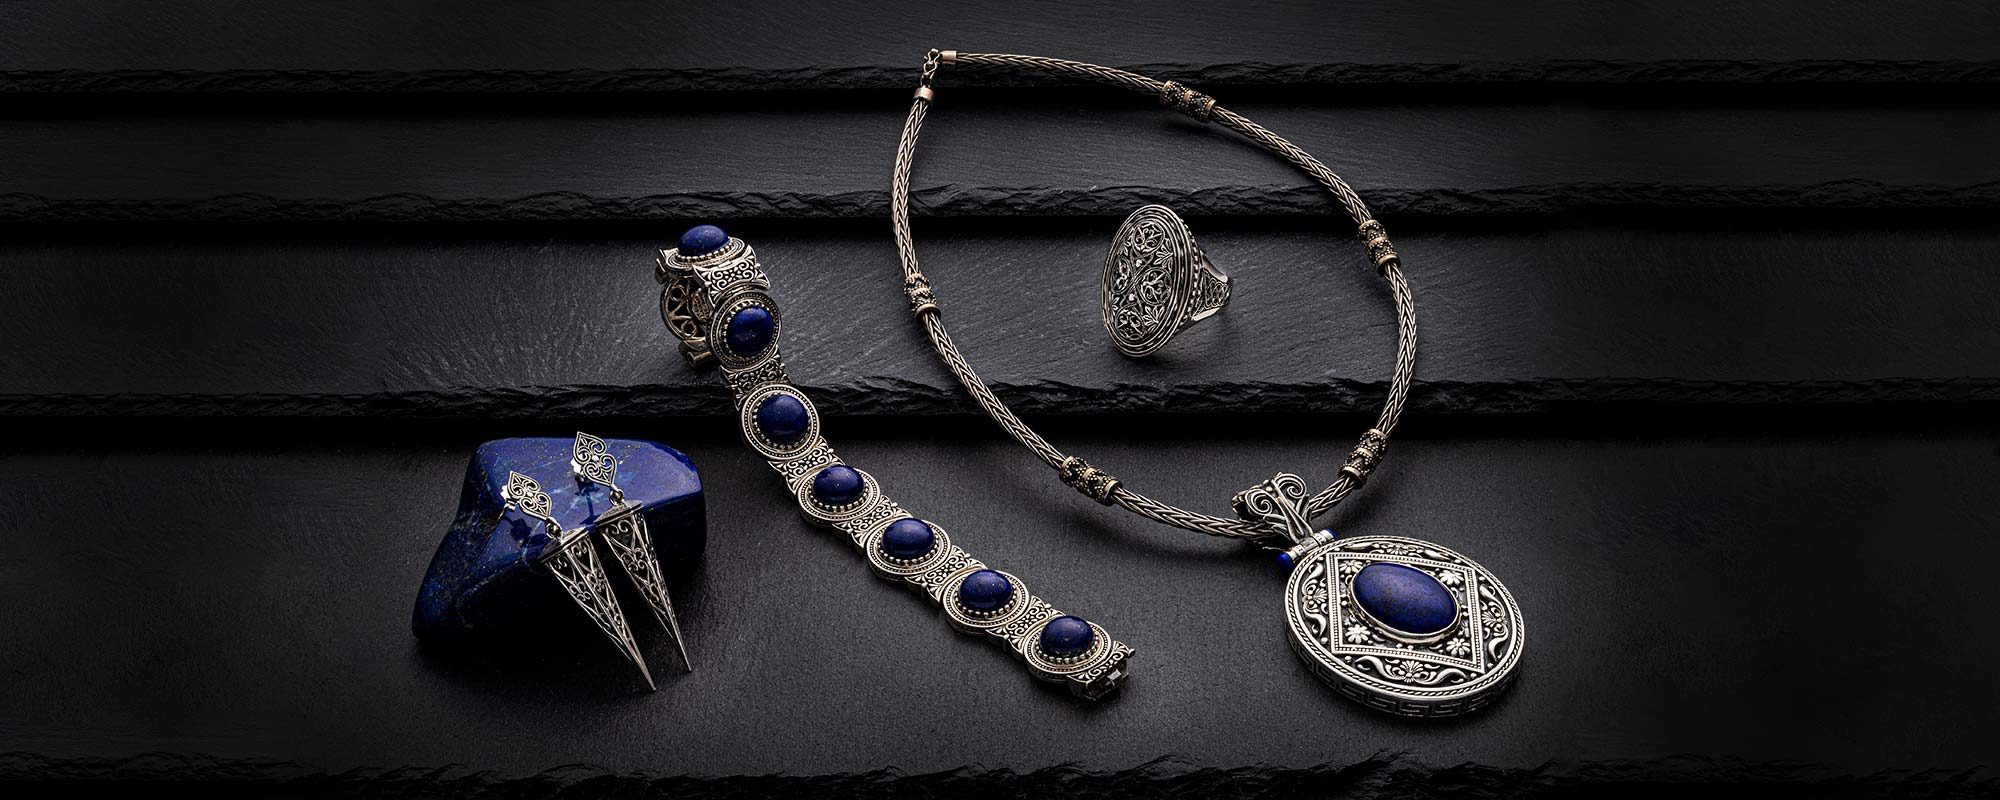 Greek Roots - Handcrafted Greek Fine Jewelry